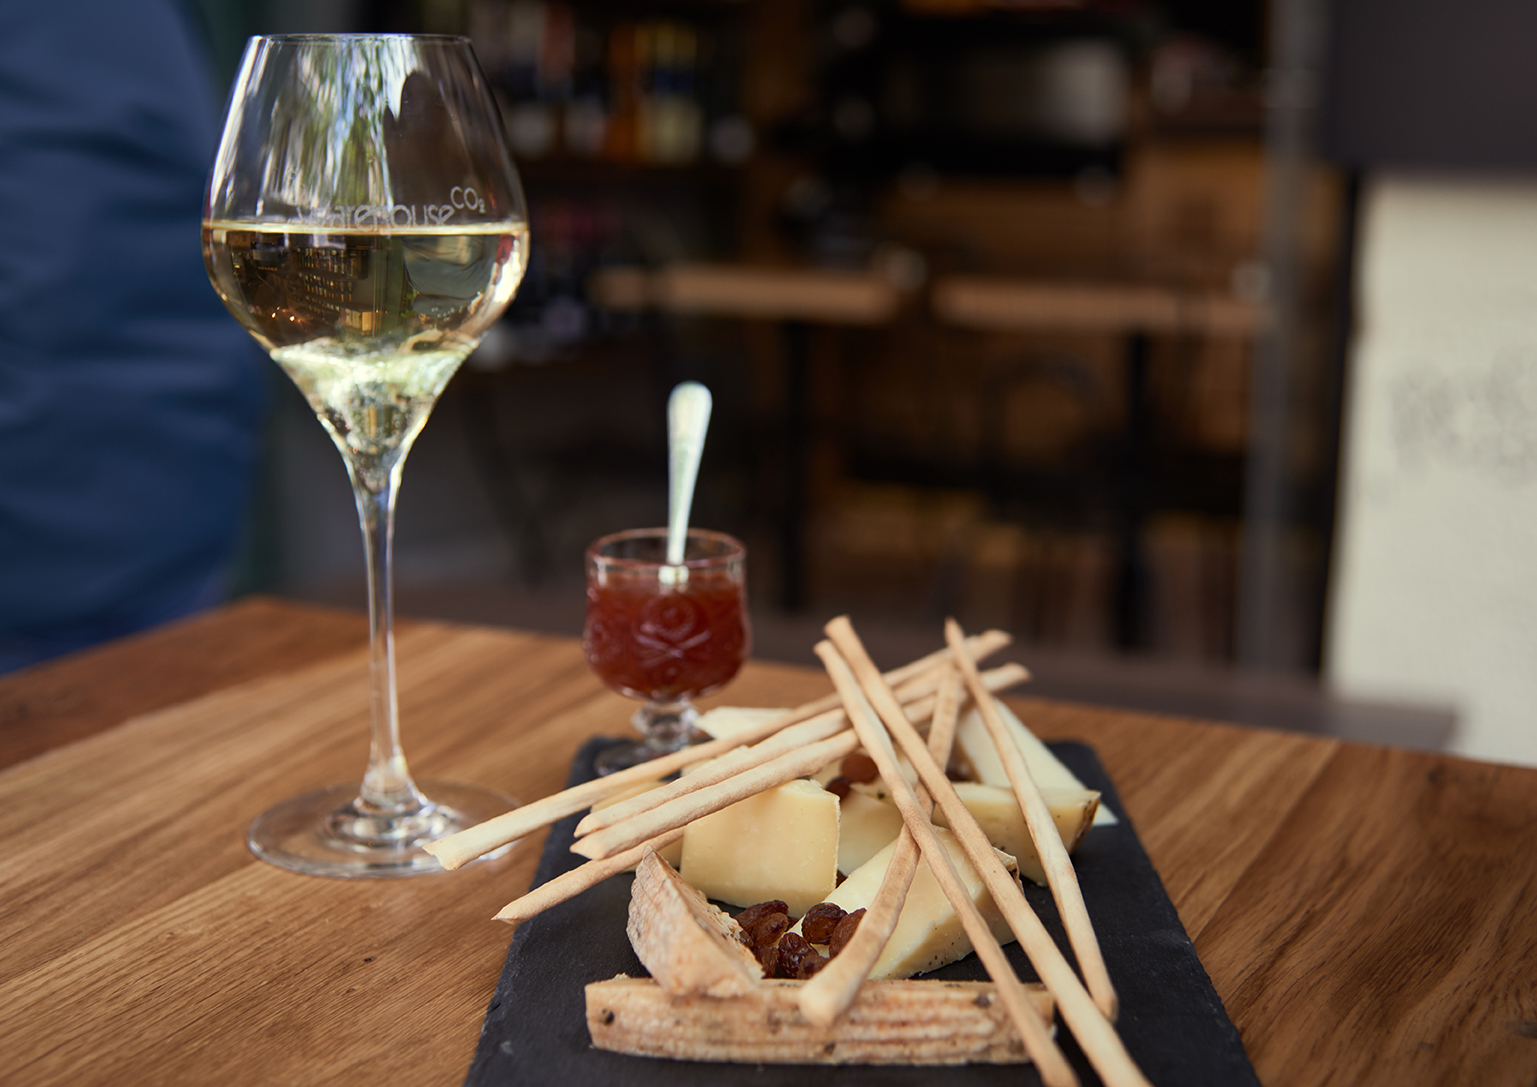 Μια ποικιλία από εξαιρετικά τυριά συνοδεύει άψογα ένα αφρώδες κρασί 